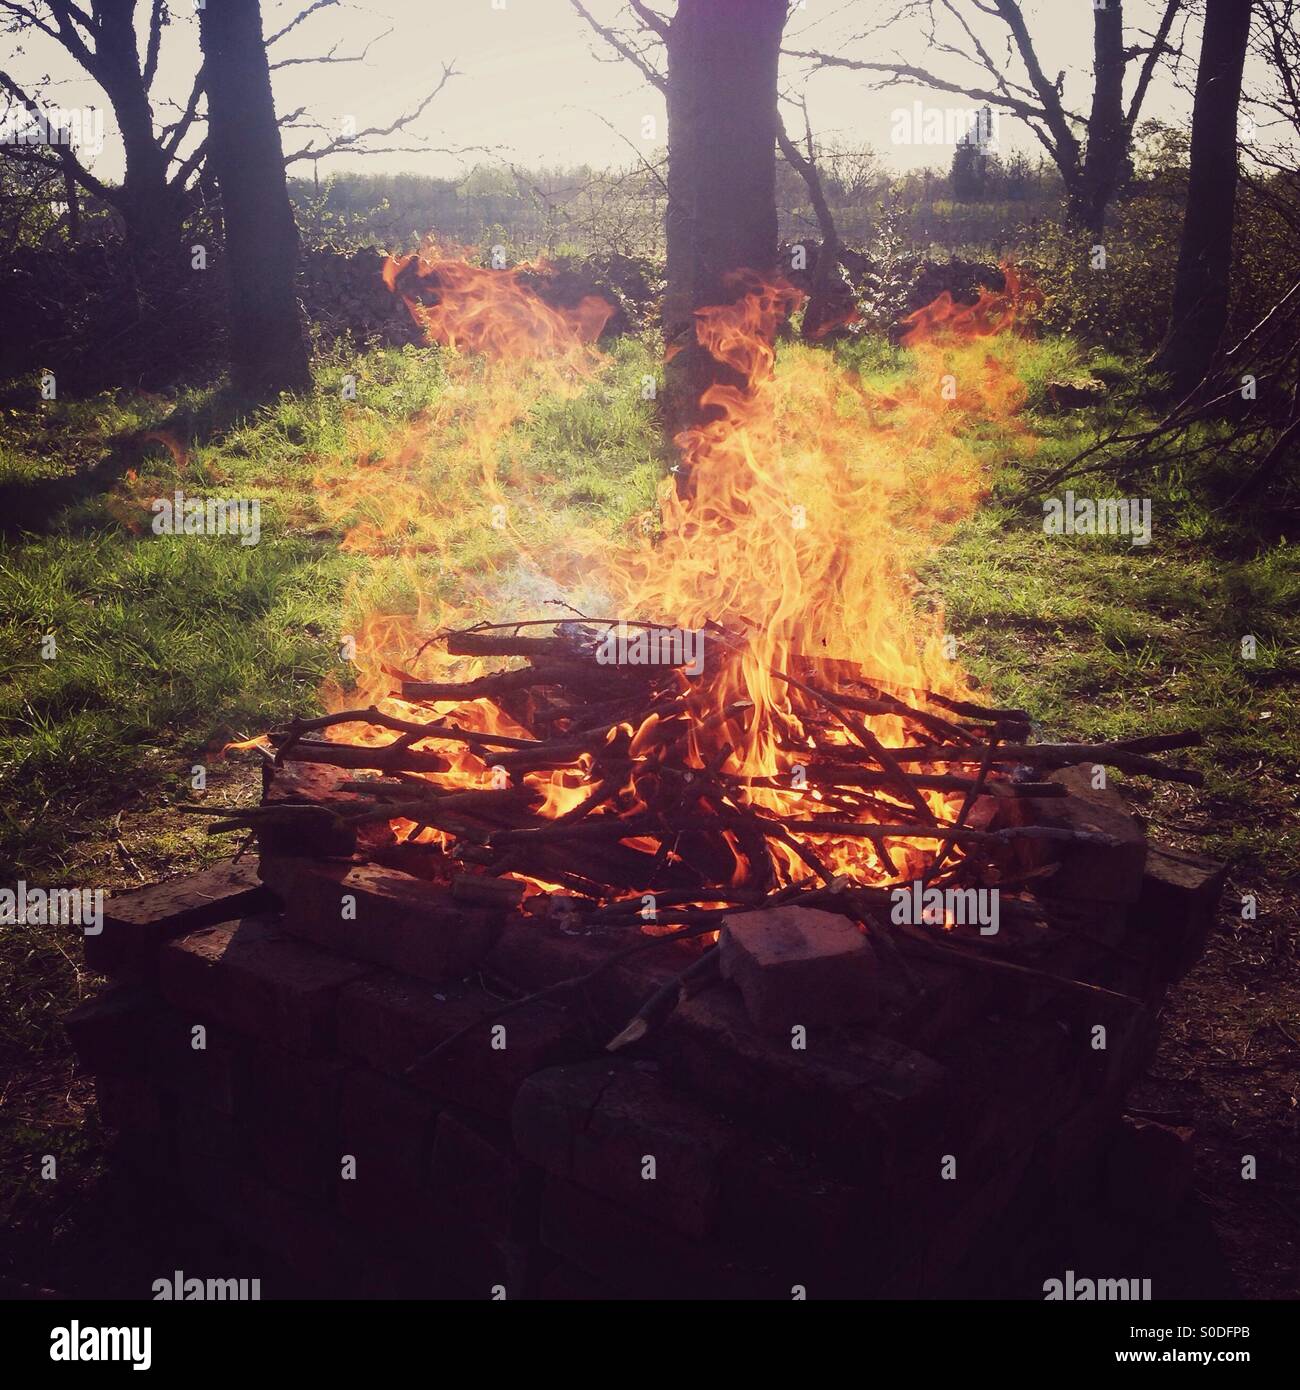 Woodland camp fire burning fiercely. Hampshire, England. Stock Photo